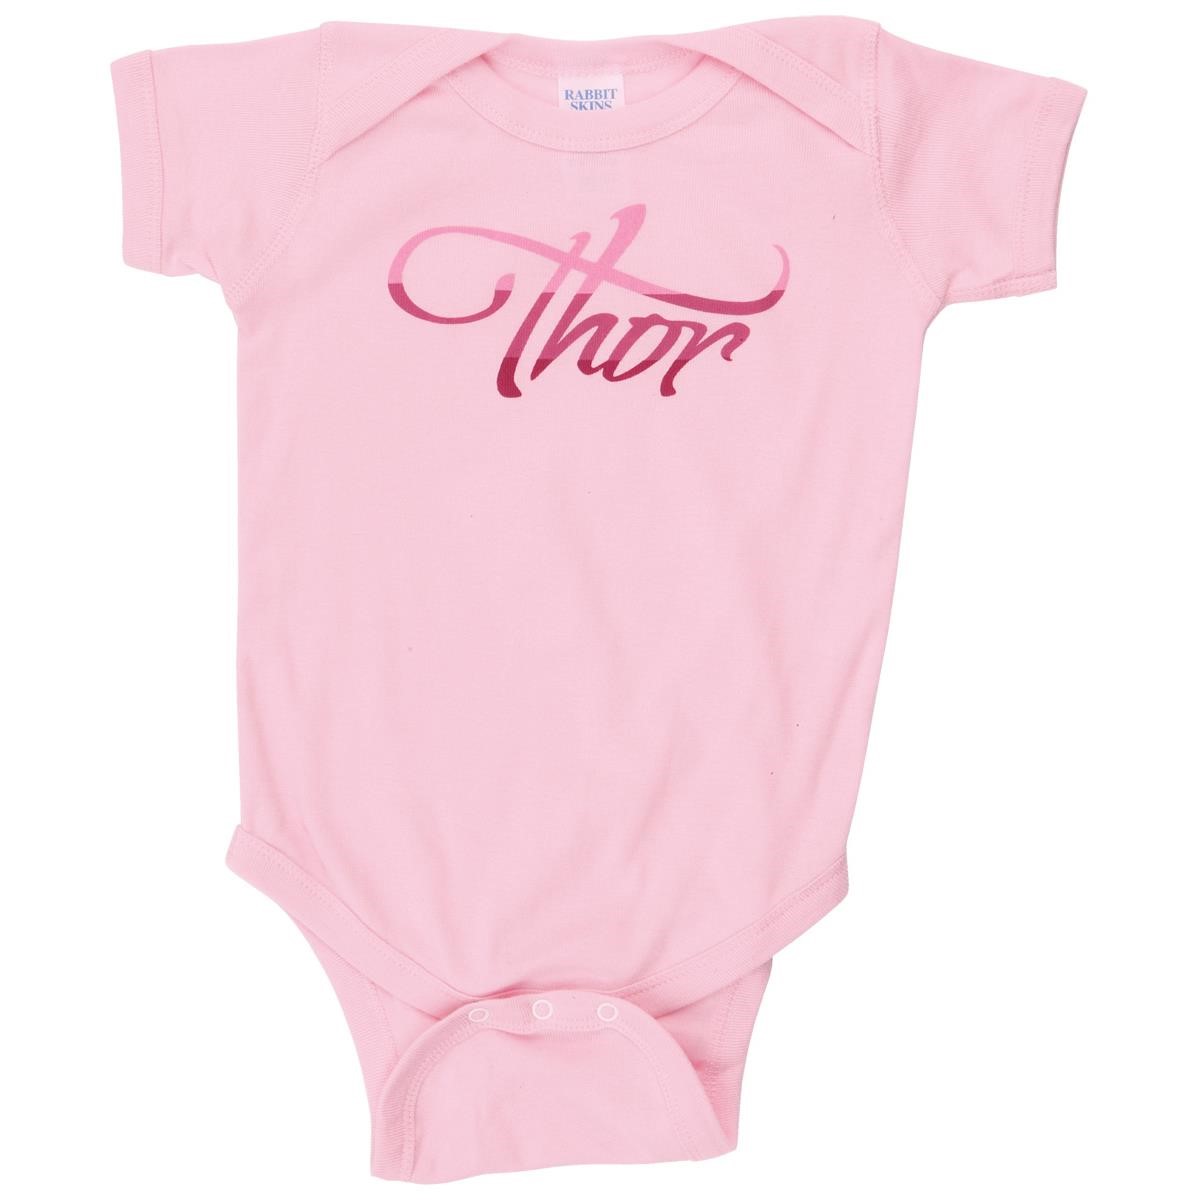 Freizeit/Streetwear Bekleidung-Unterwäsche/Schlafkleidung - Thor Baby Body Onsies Luna Pink